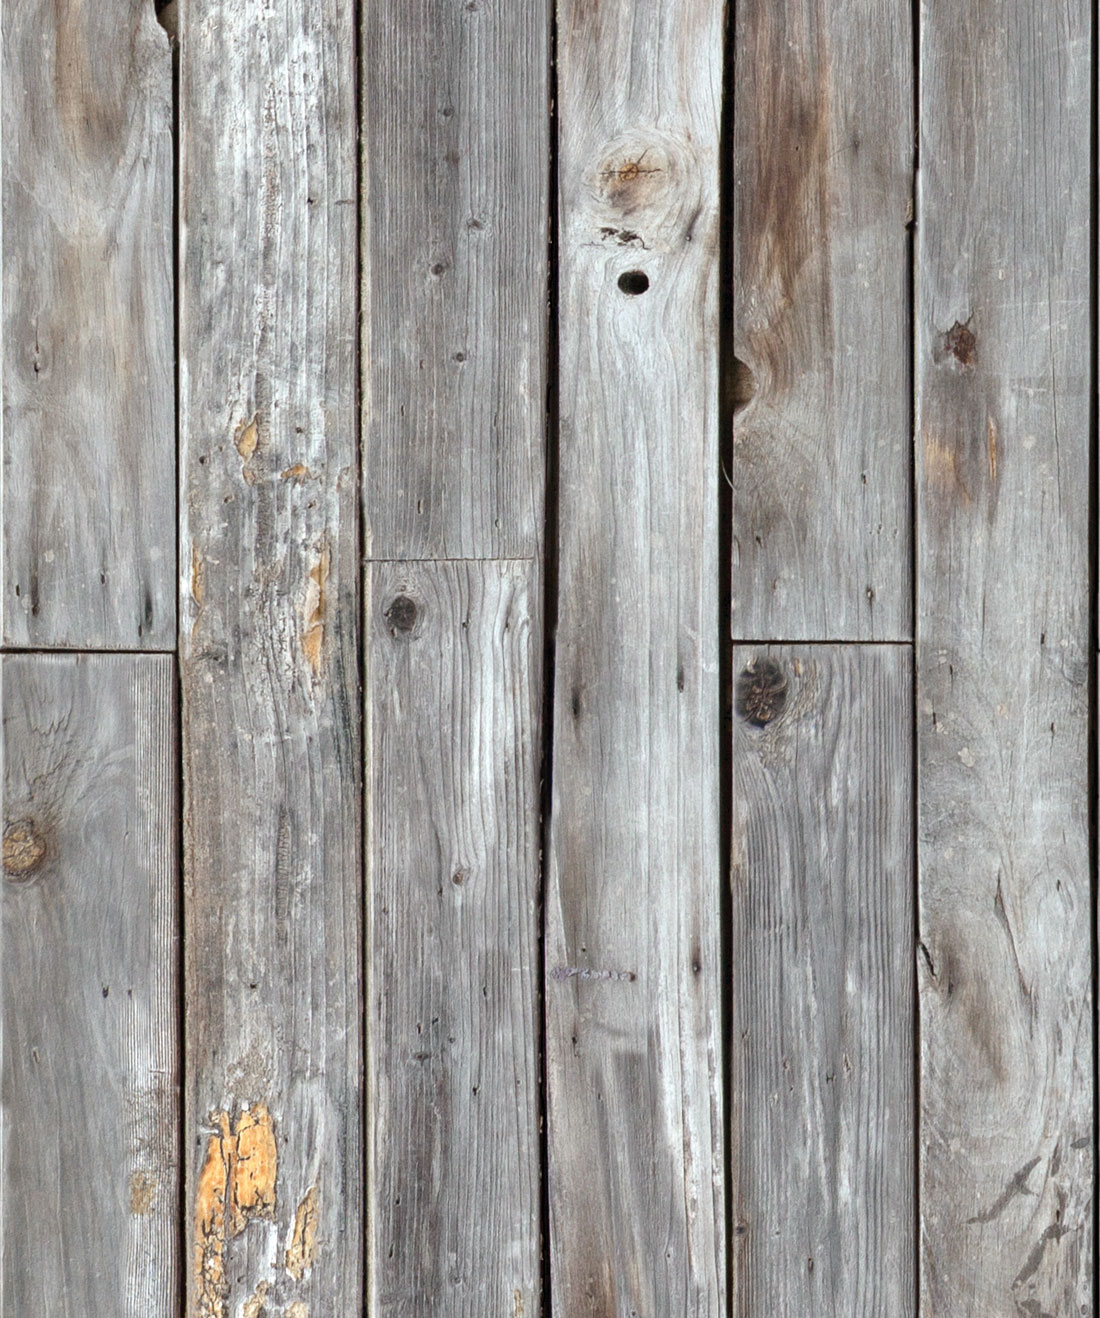 Tấm vách gỗ hiệu ứng Rustic Wood Panels của Milton & King AUS sẽ giúp cho không gian của bạn trở nên đẹp hơn bao giờ hết. Với màu sắc ấm áp, họa tiết gỗ đa dạng và độ bền cao, sản phẩm này sẽ là giải pháp tuyệt vời để trang trí tường của bạn trong những không gian khác nhau.